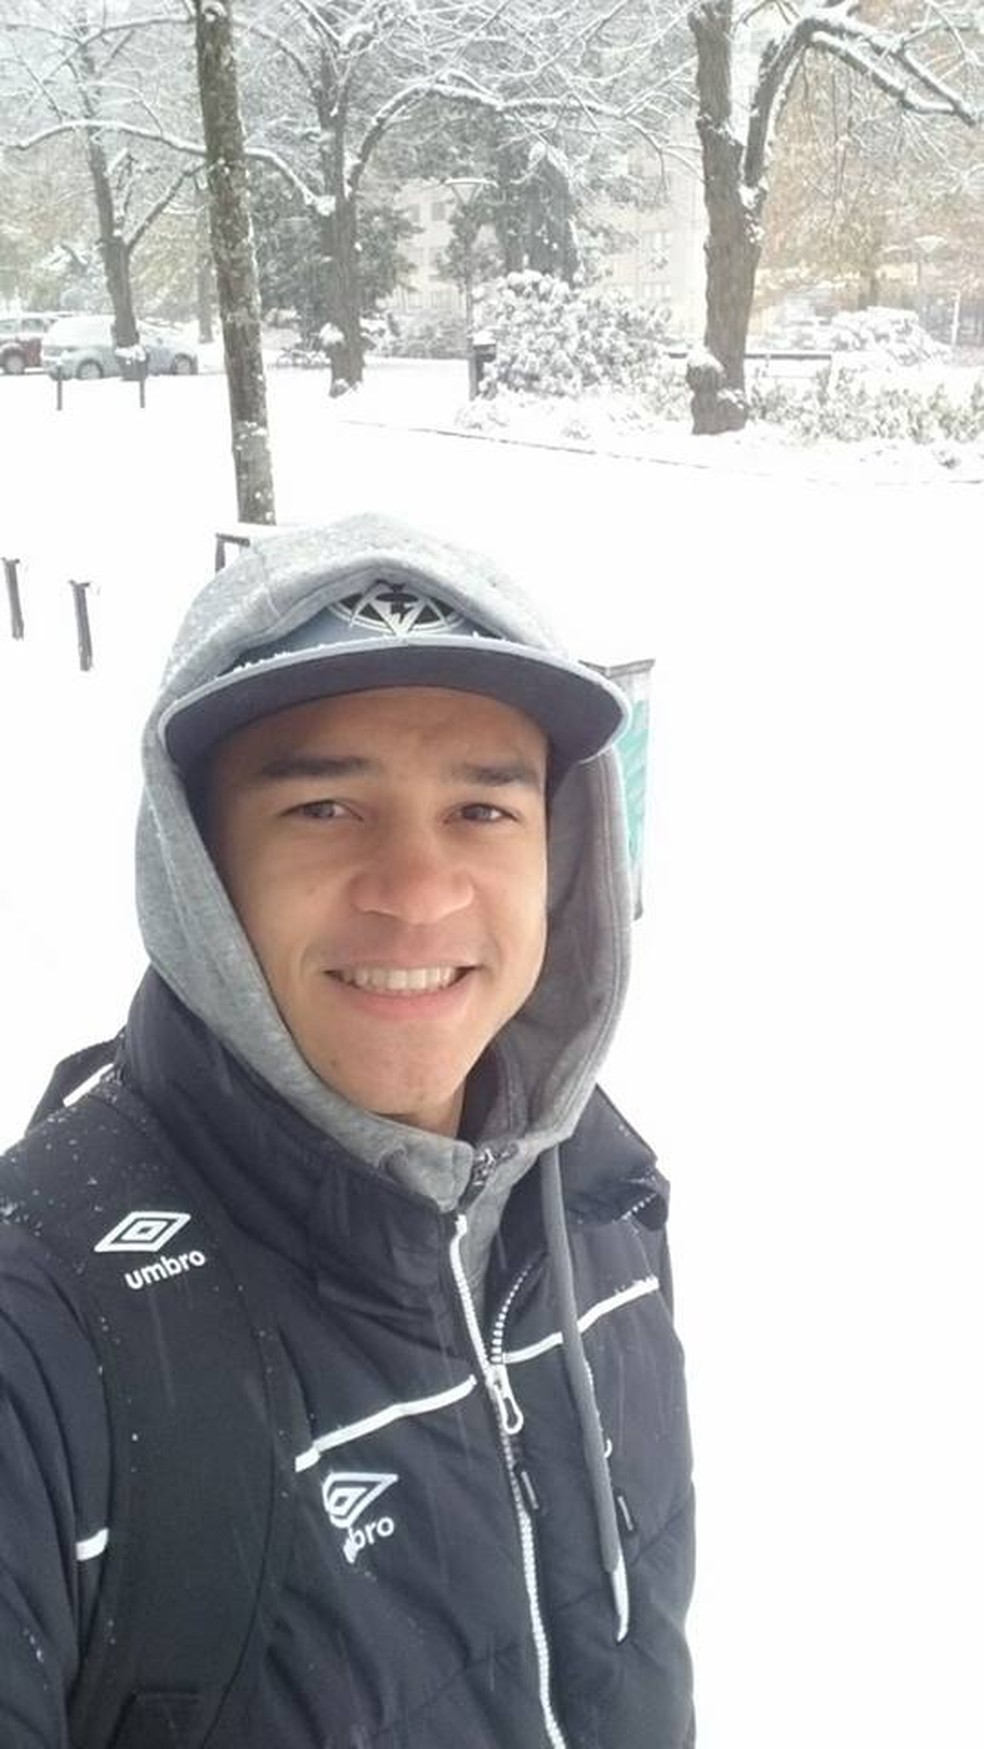 Stênio Garcia convive com as baixas temperaturas no país da Escandinávia (Foto: Reprodução/Facebook)